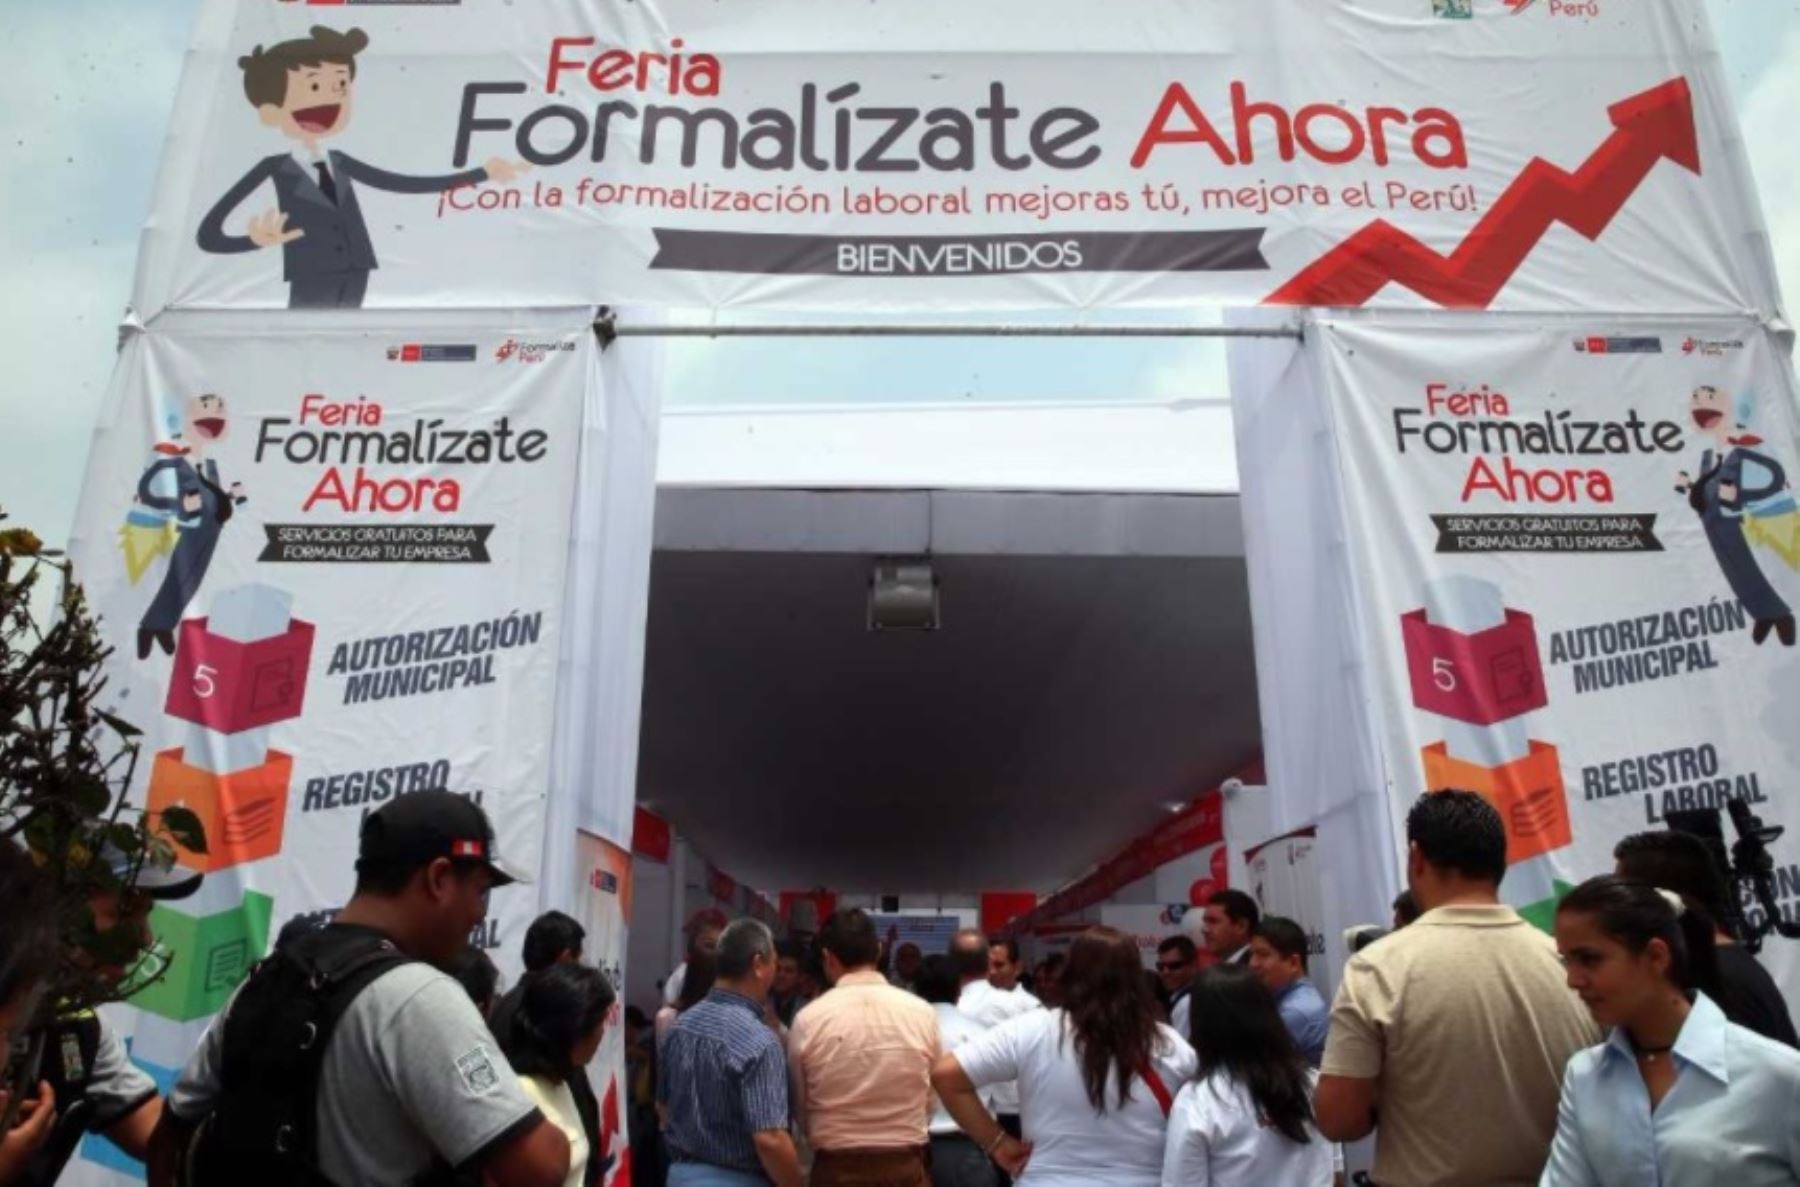 Del jueves 22 al sábado 24 de junio, el Ministerio de Trabajo y Promoción del Empleo (MTPE) organizará en Chiclayo la feria Formalízate Ahora para facilitar la formalización de empresas y negocios.